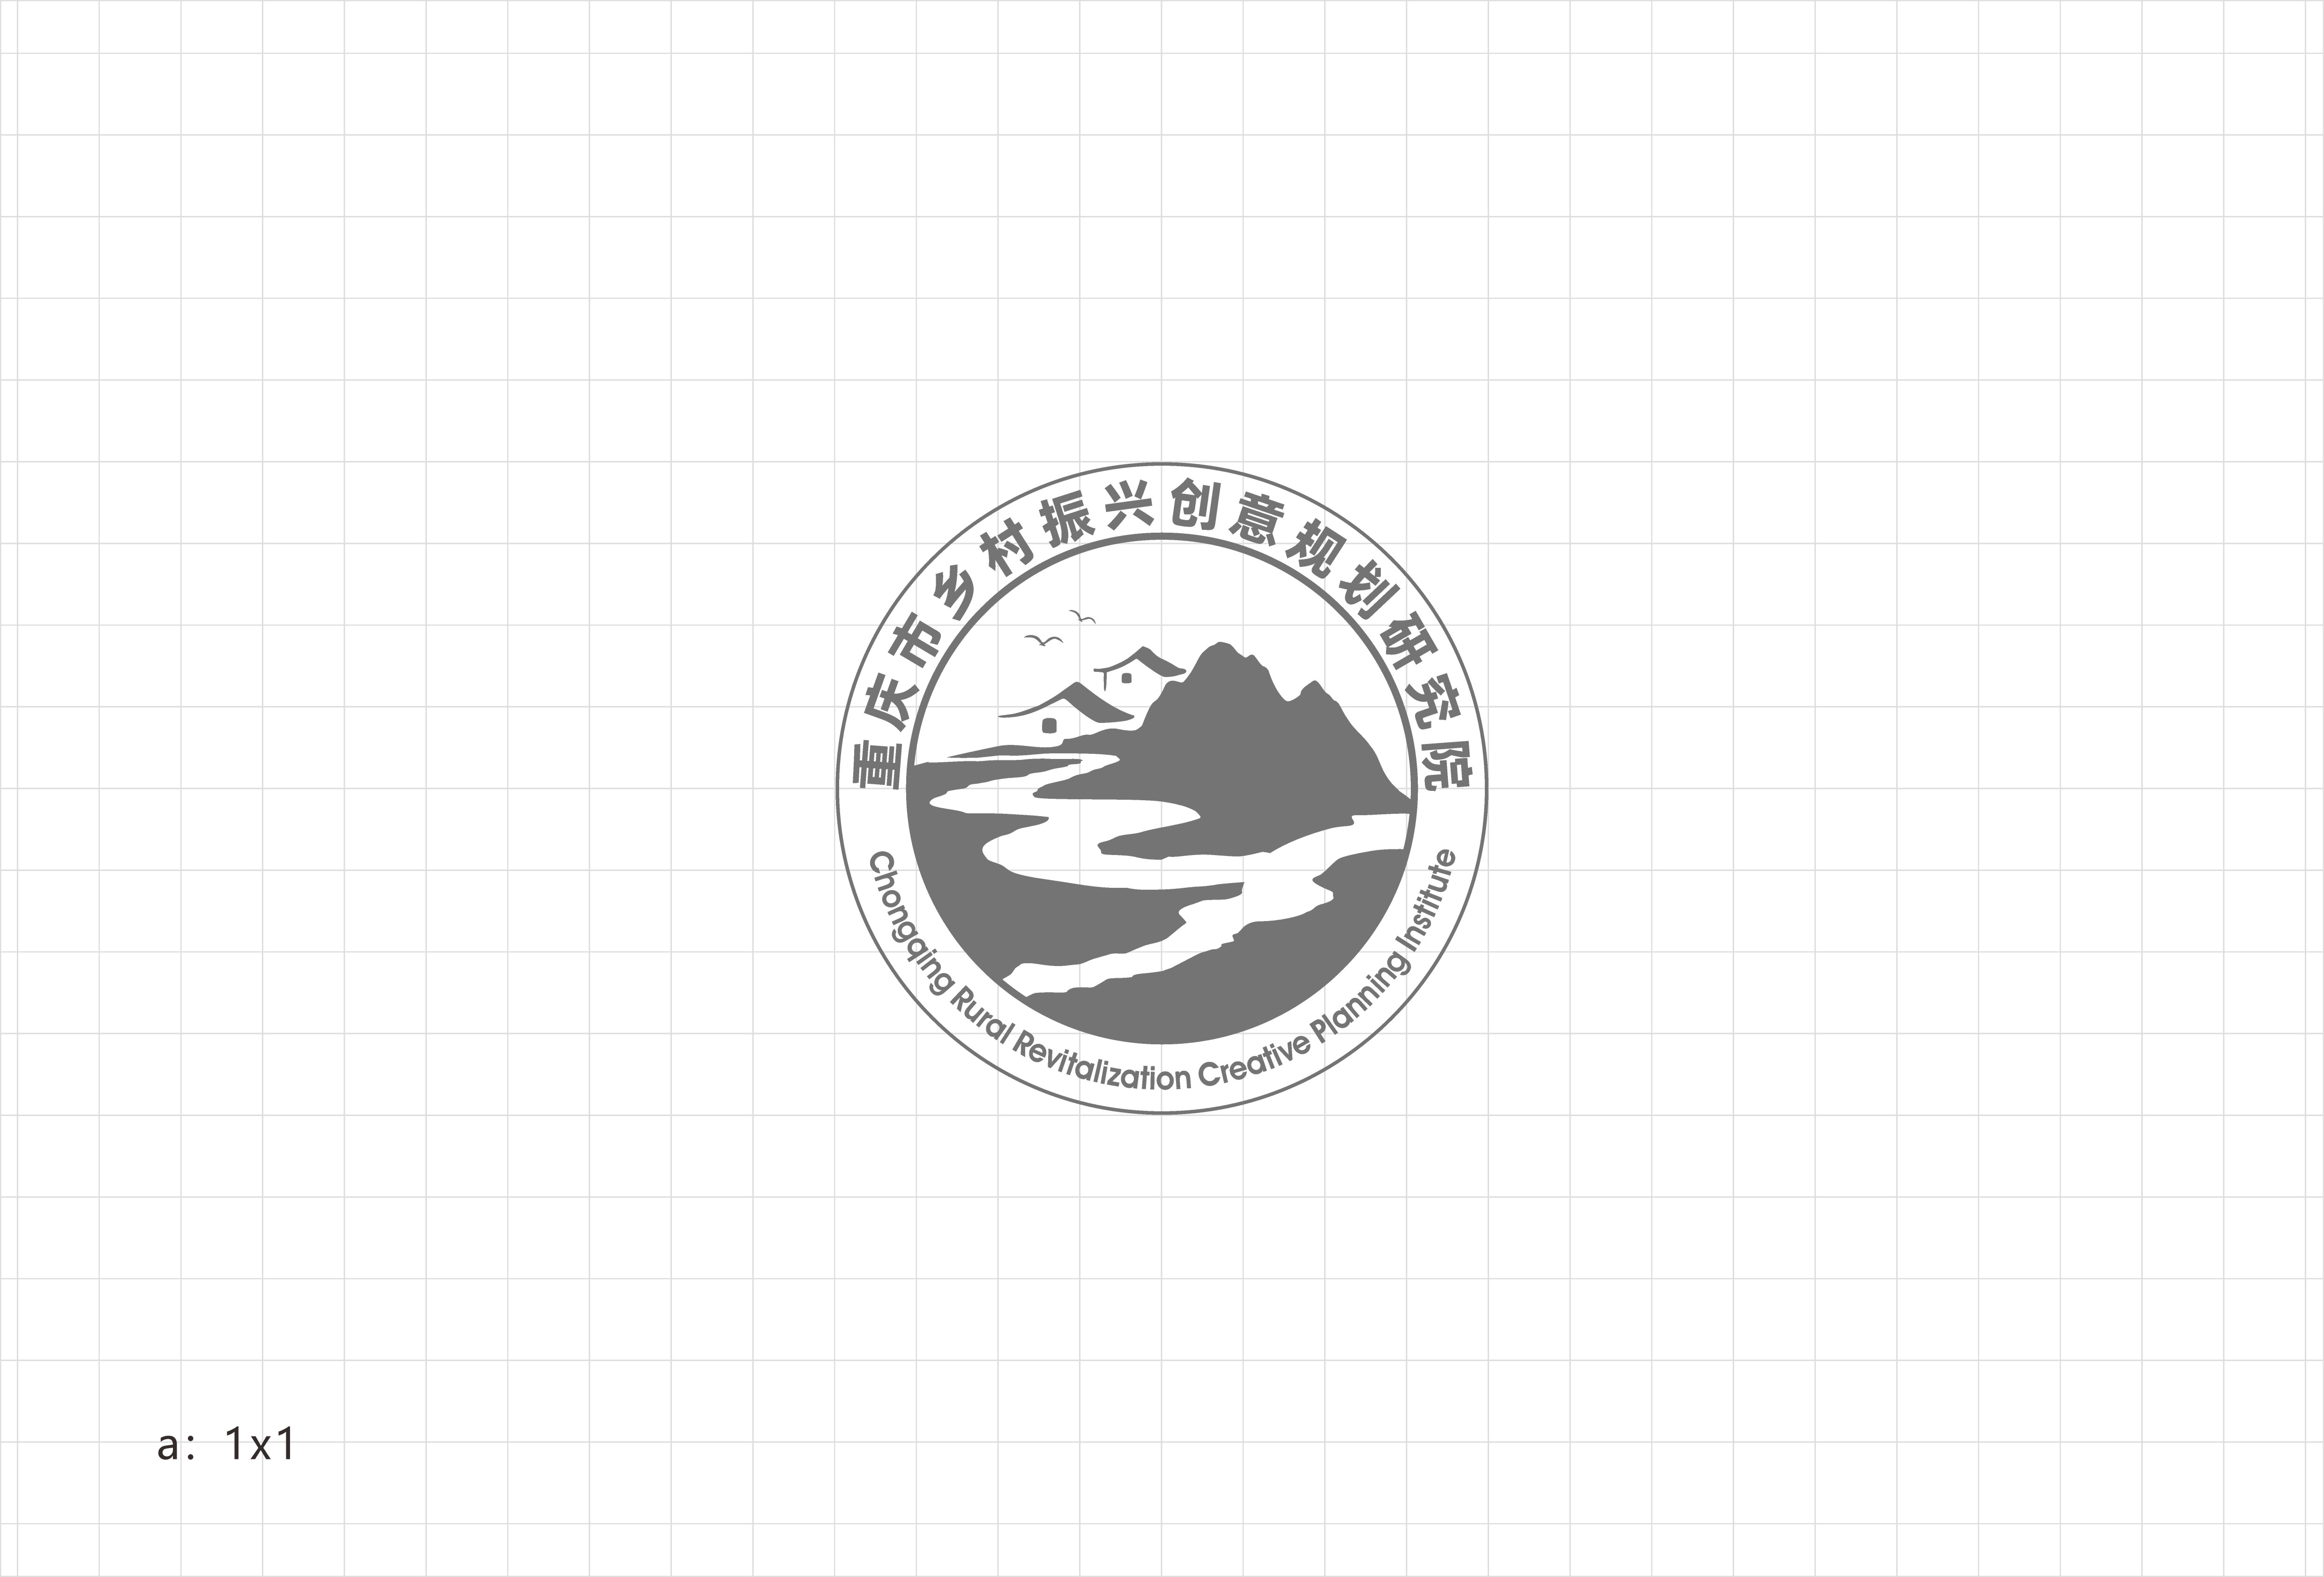 乡村振兴免费logo图片